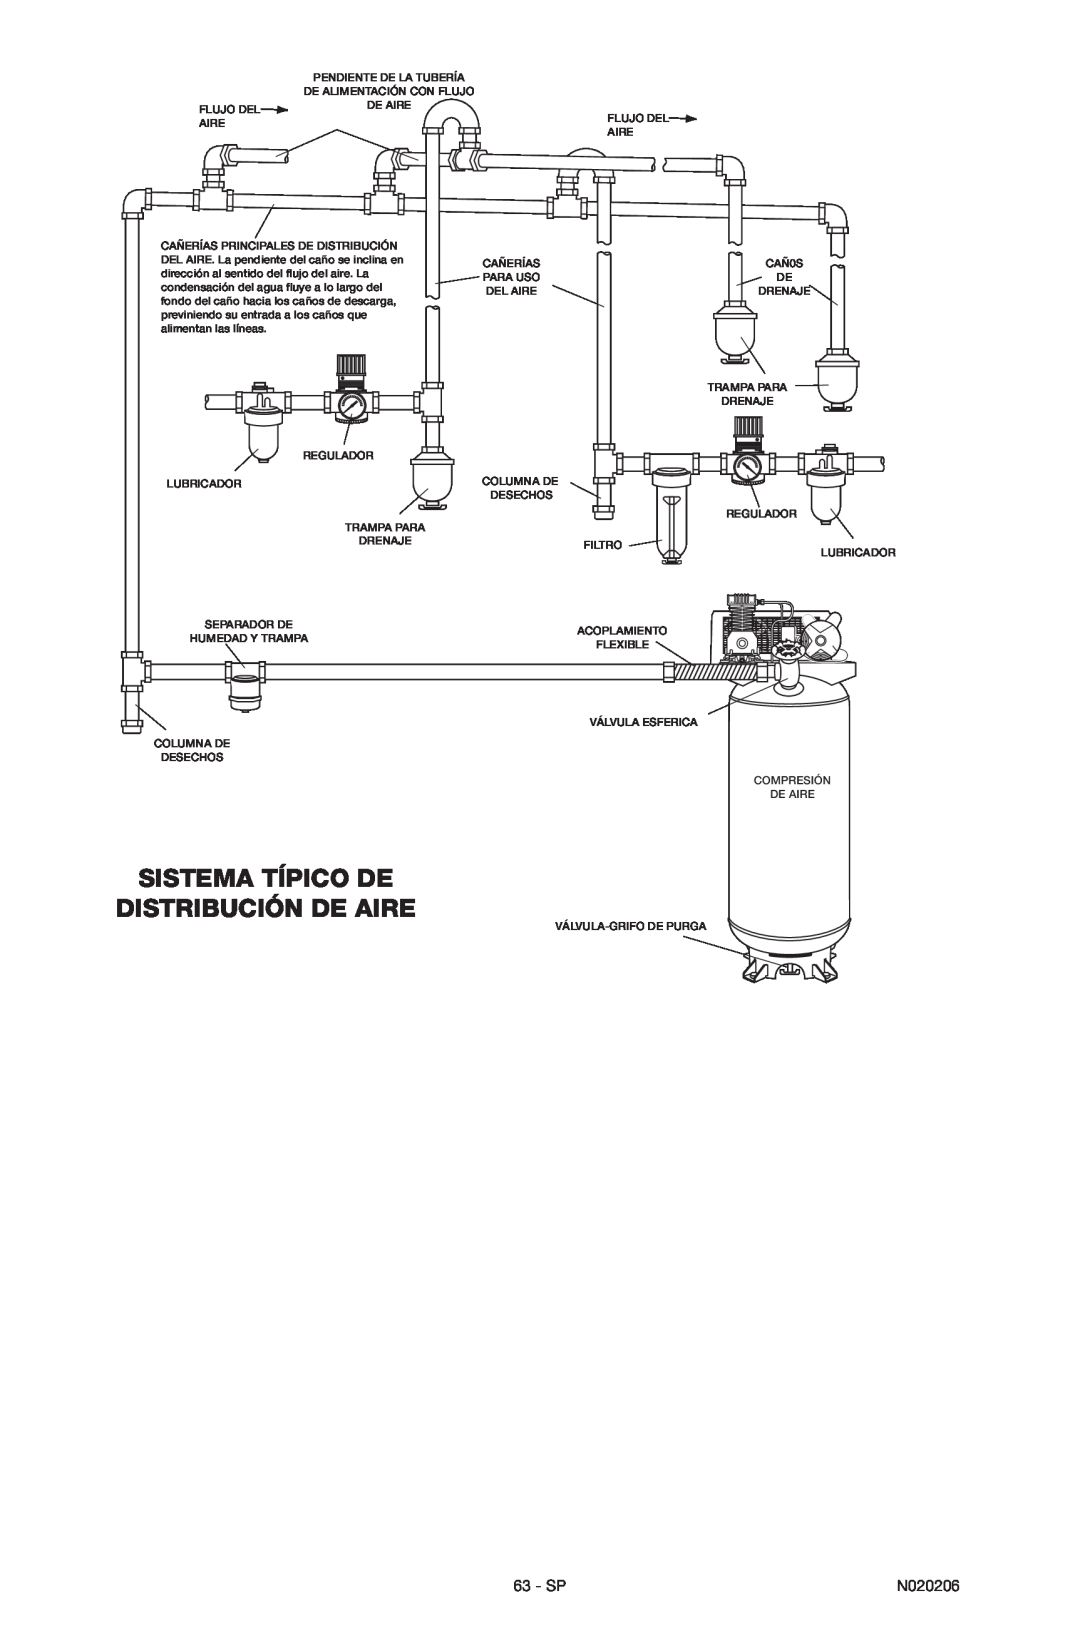 Porter-Cable C7501M, N020206-NOV08-0 instruction manual Sistema Típico De Distribución De Aire, Sp 